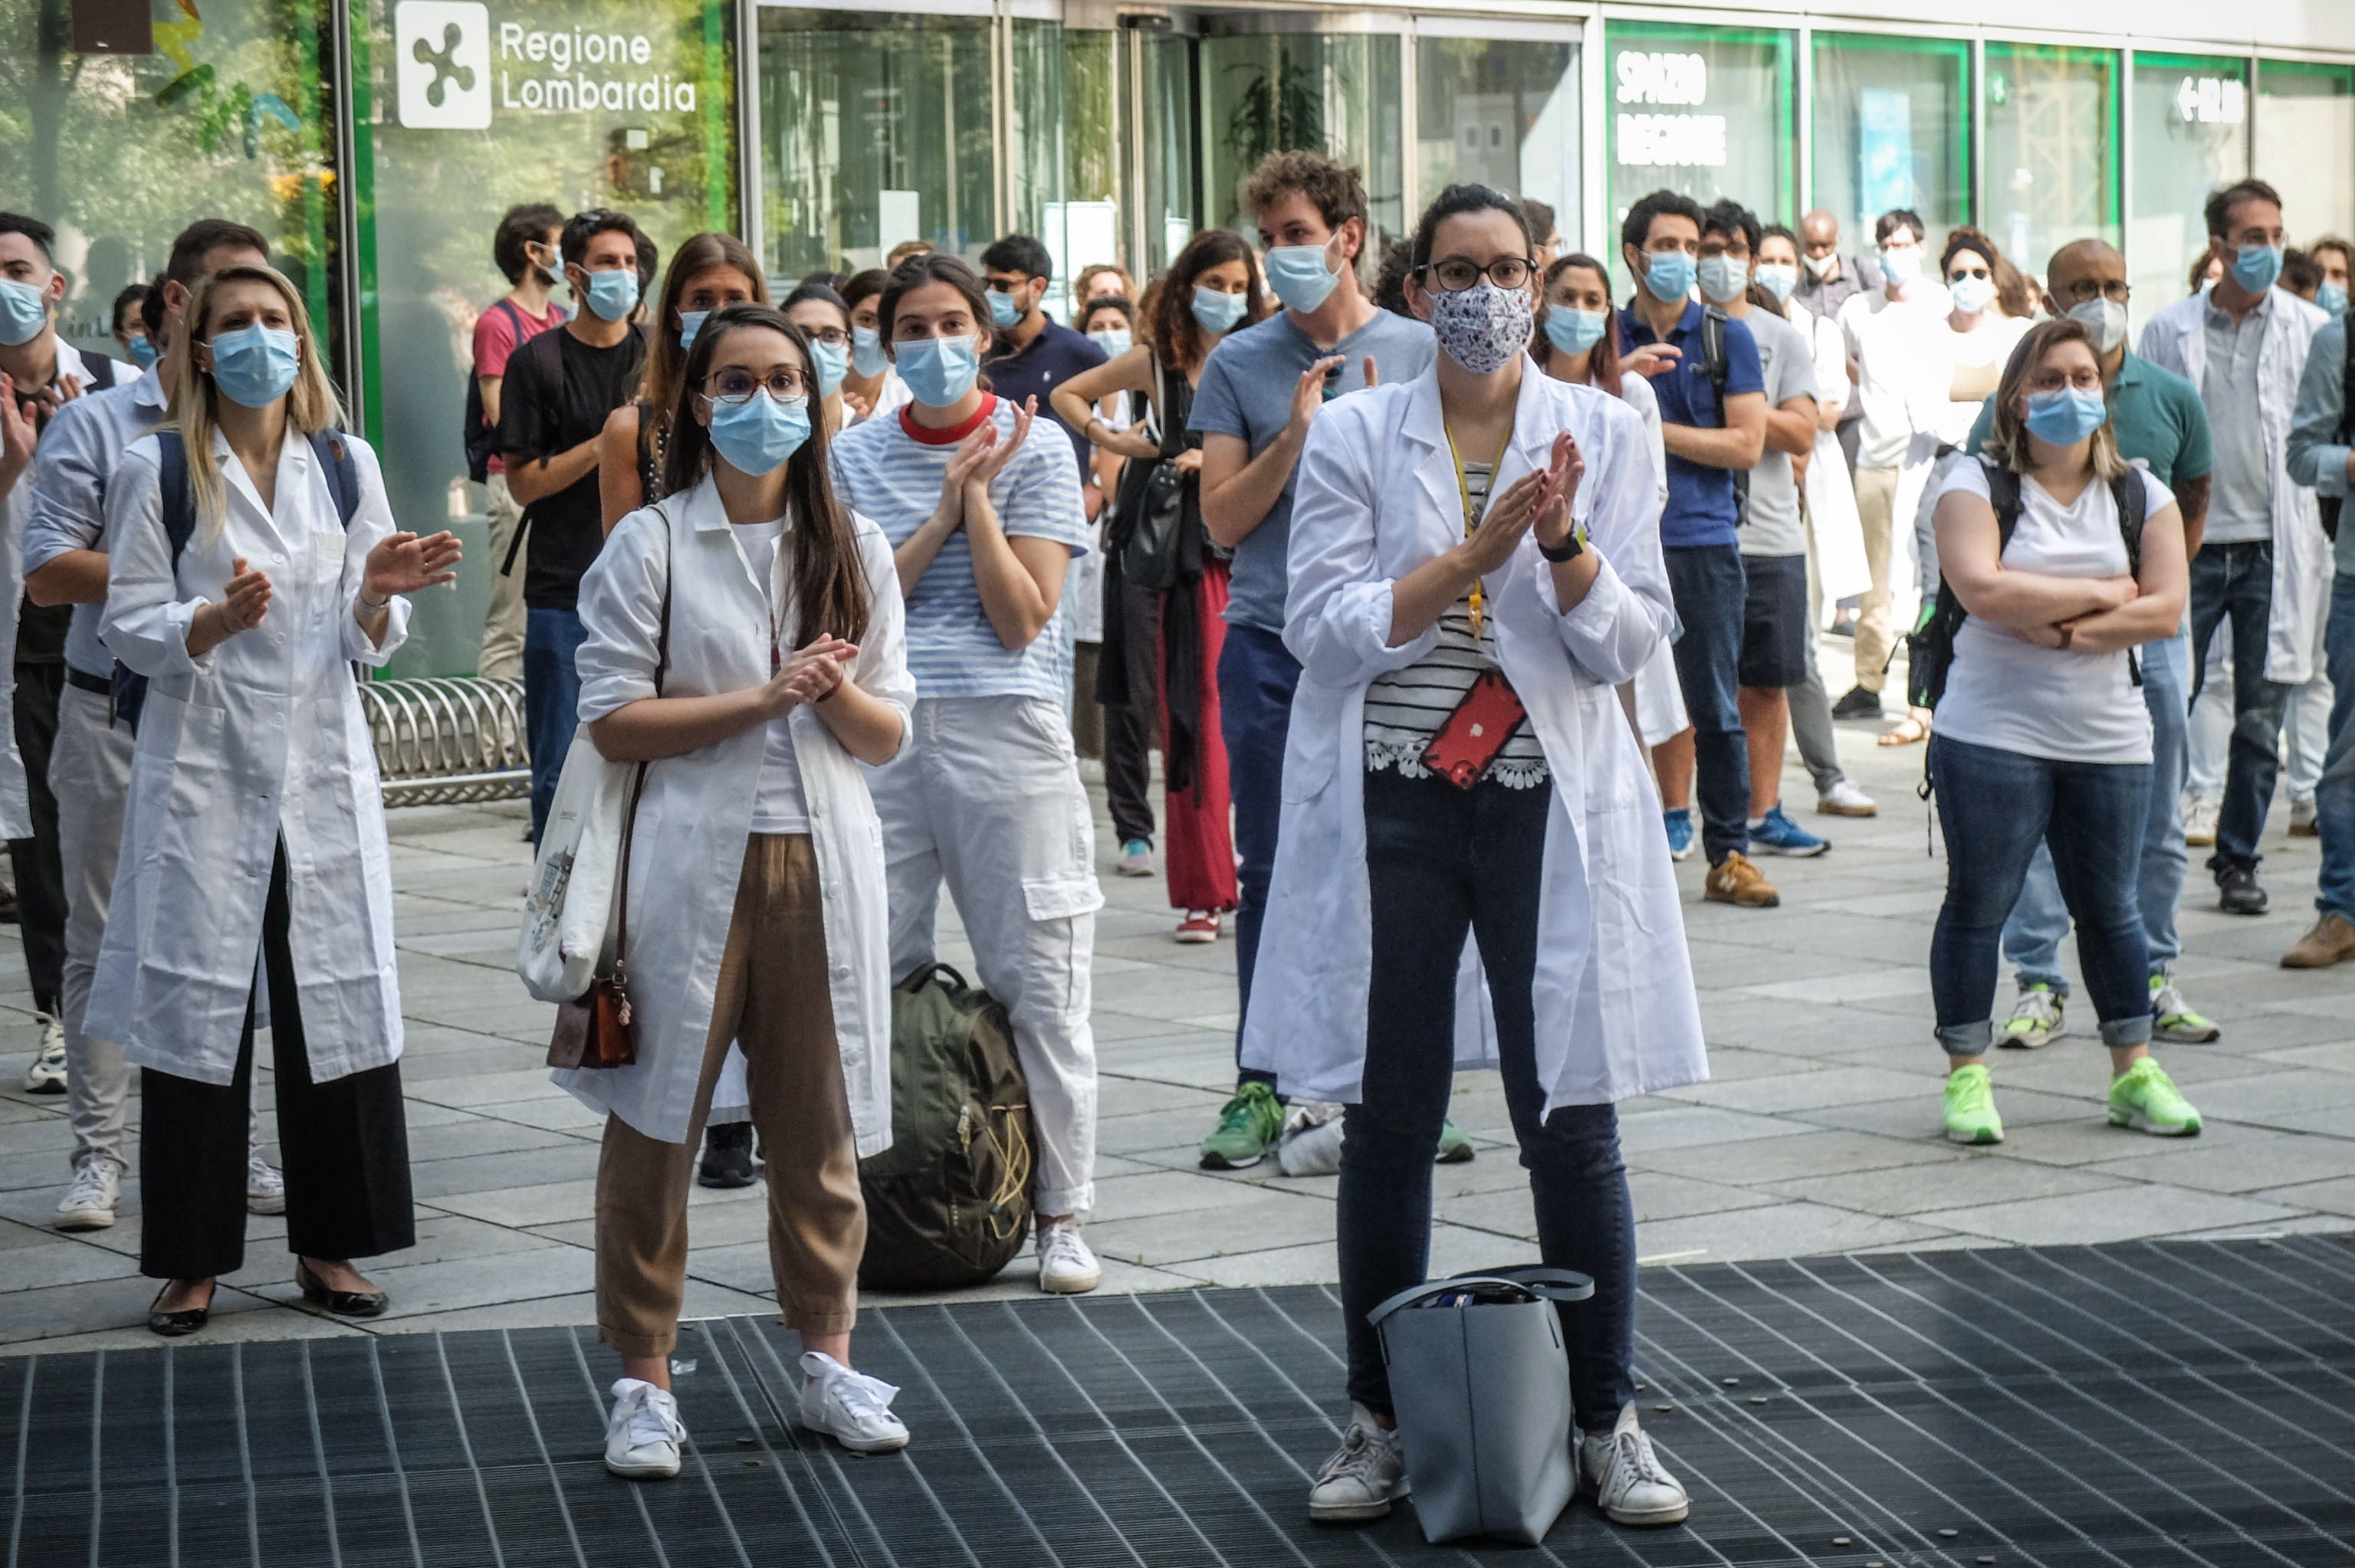 Estudiantes graduados de Medicina protestan en Italia en demanda de reconocimiento por su esfuerzo para enfrentar el coronavirus. (Foto Prensa Libre: AFP)